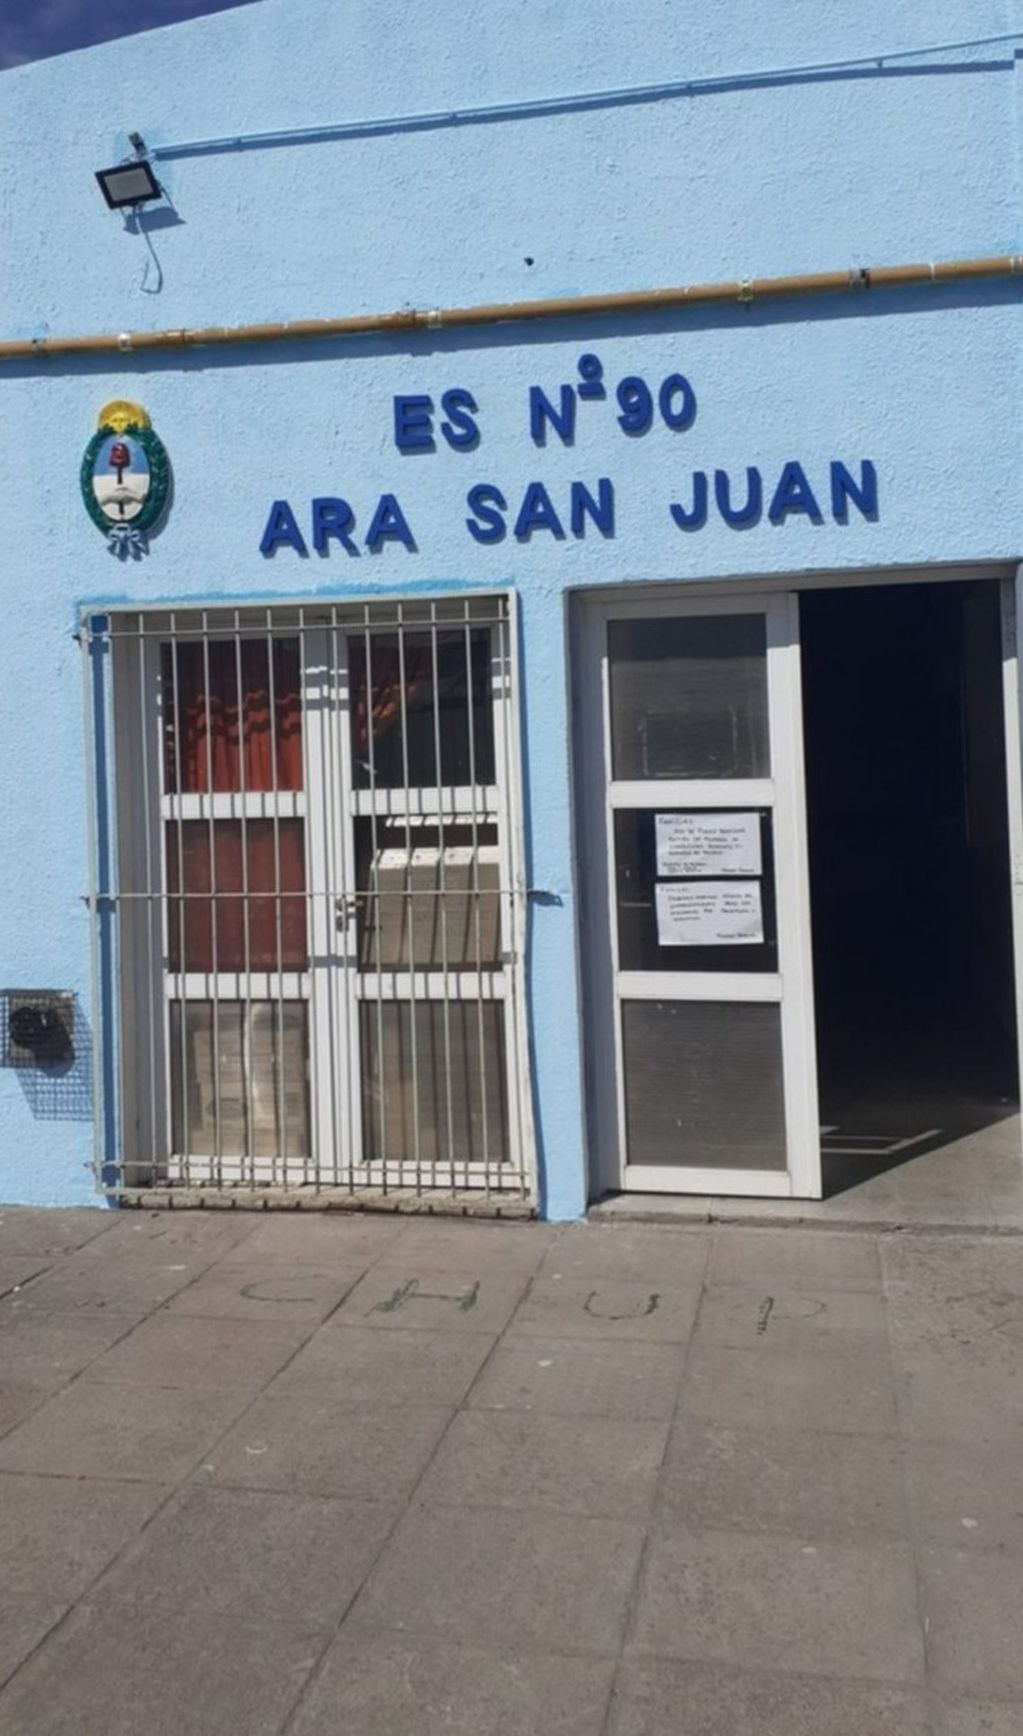 La nueva fachada de la Escuela "ARA San Juan".